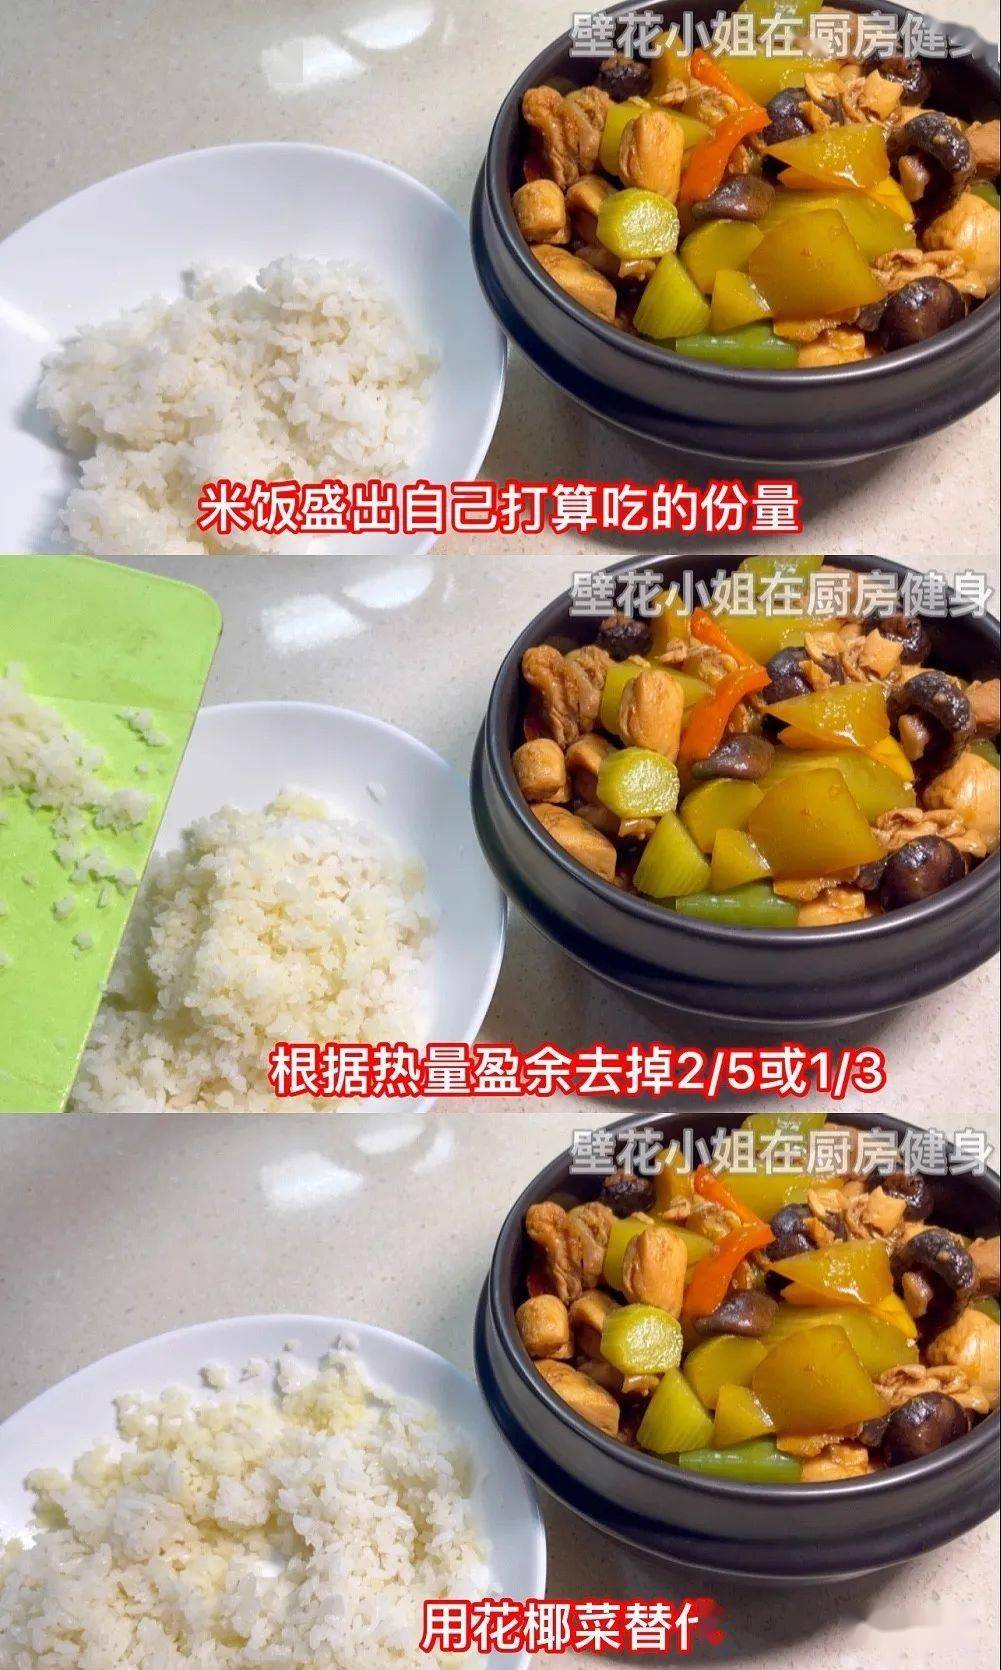 黄焖鸡米饭热量图片